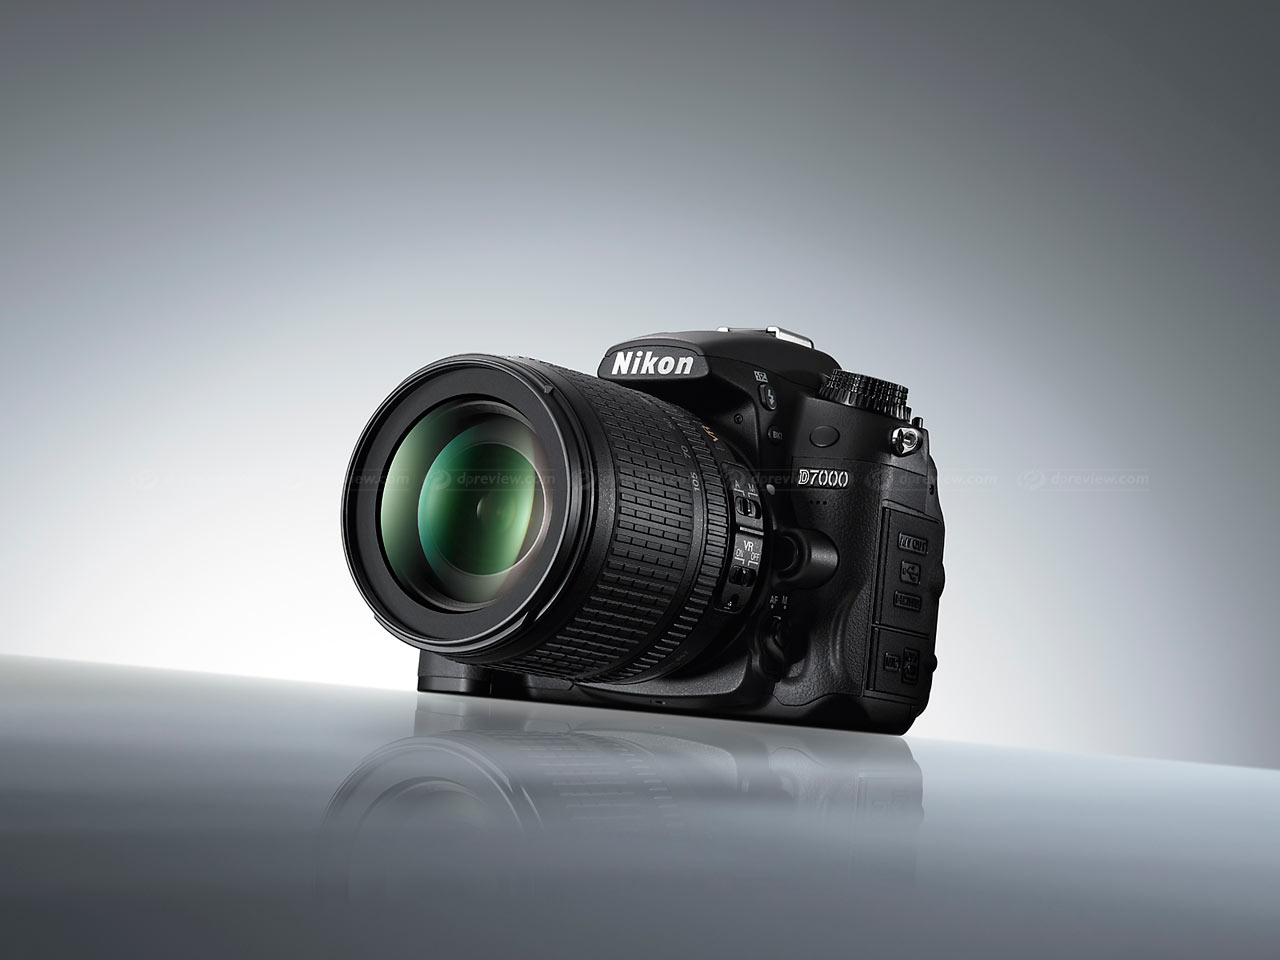 Nikon d7000 with 18-105vr kit lense large image 0